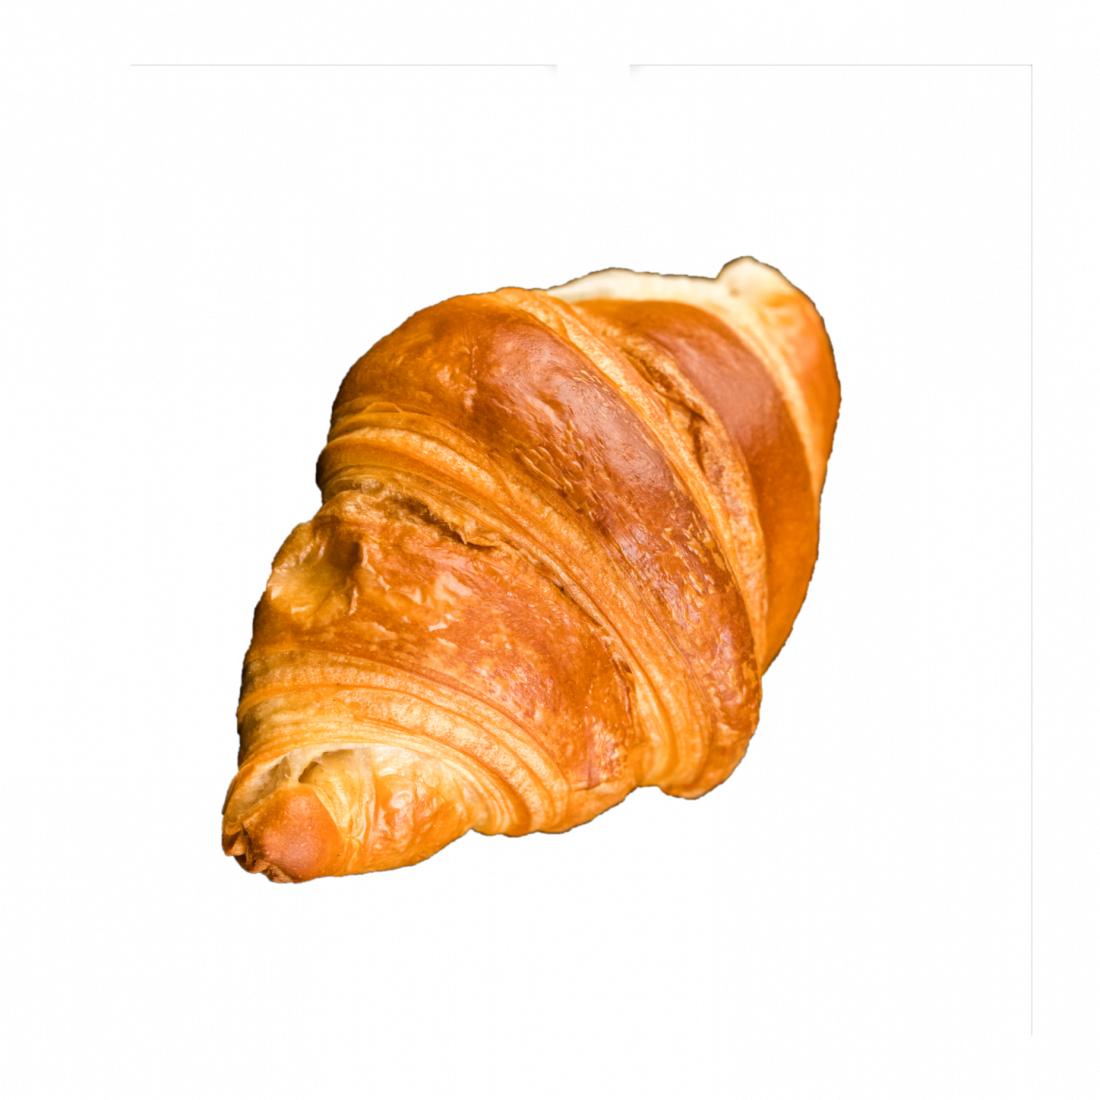 Fotografie - Croissant Vegan William Thomas bakery